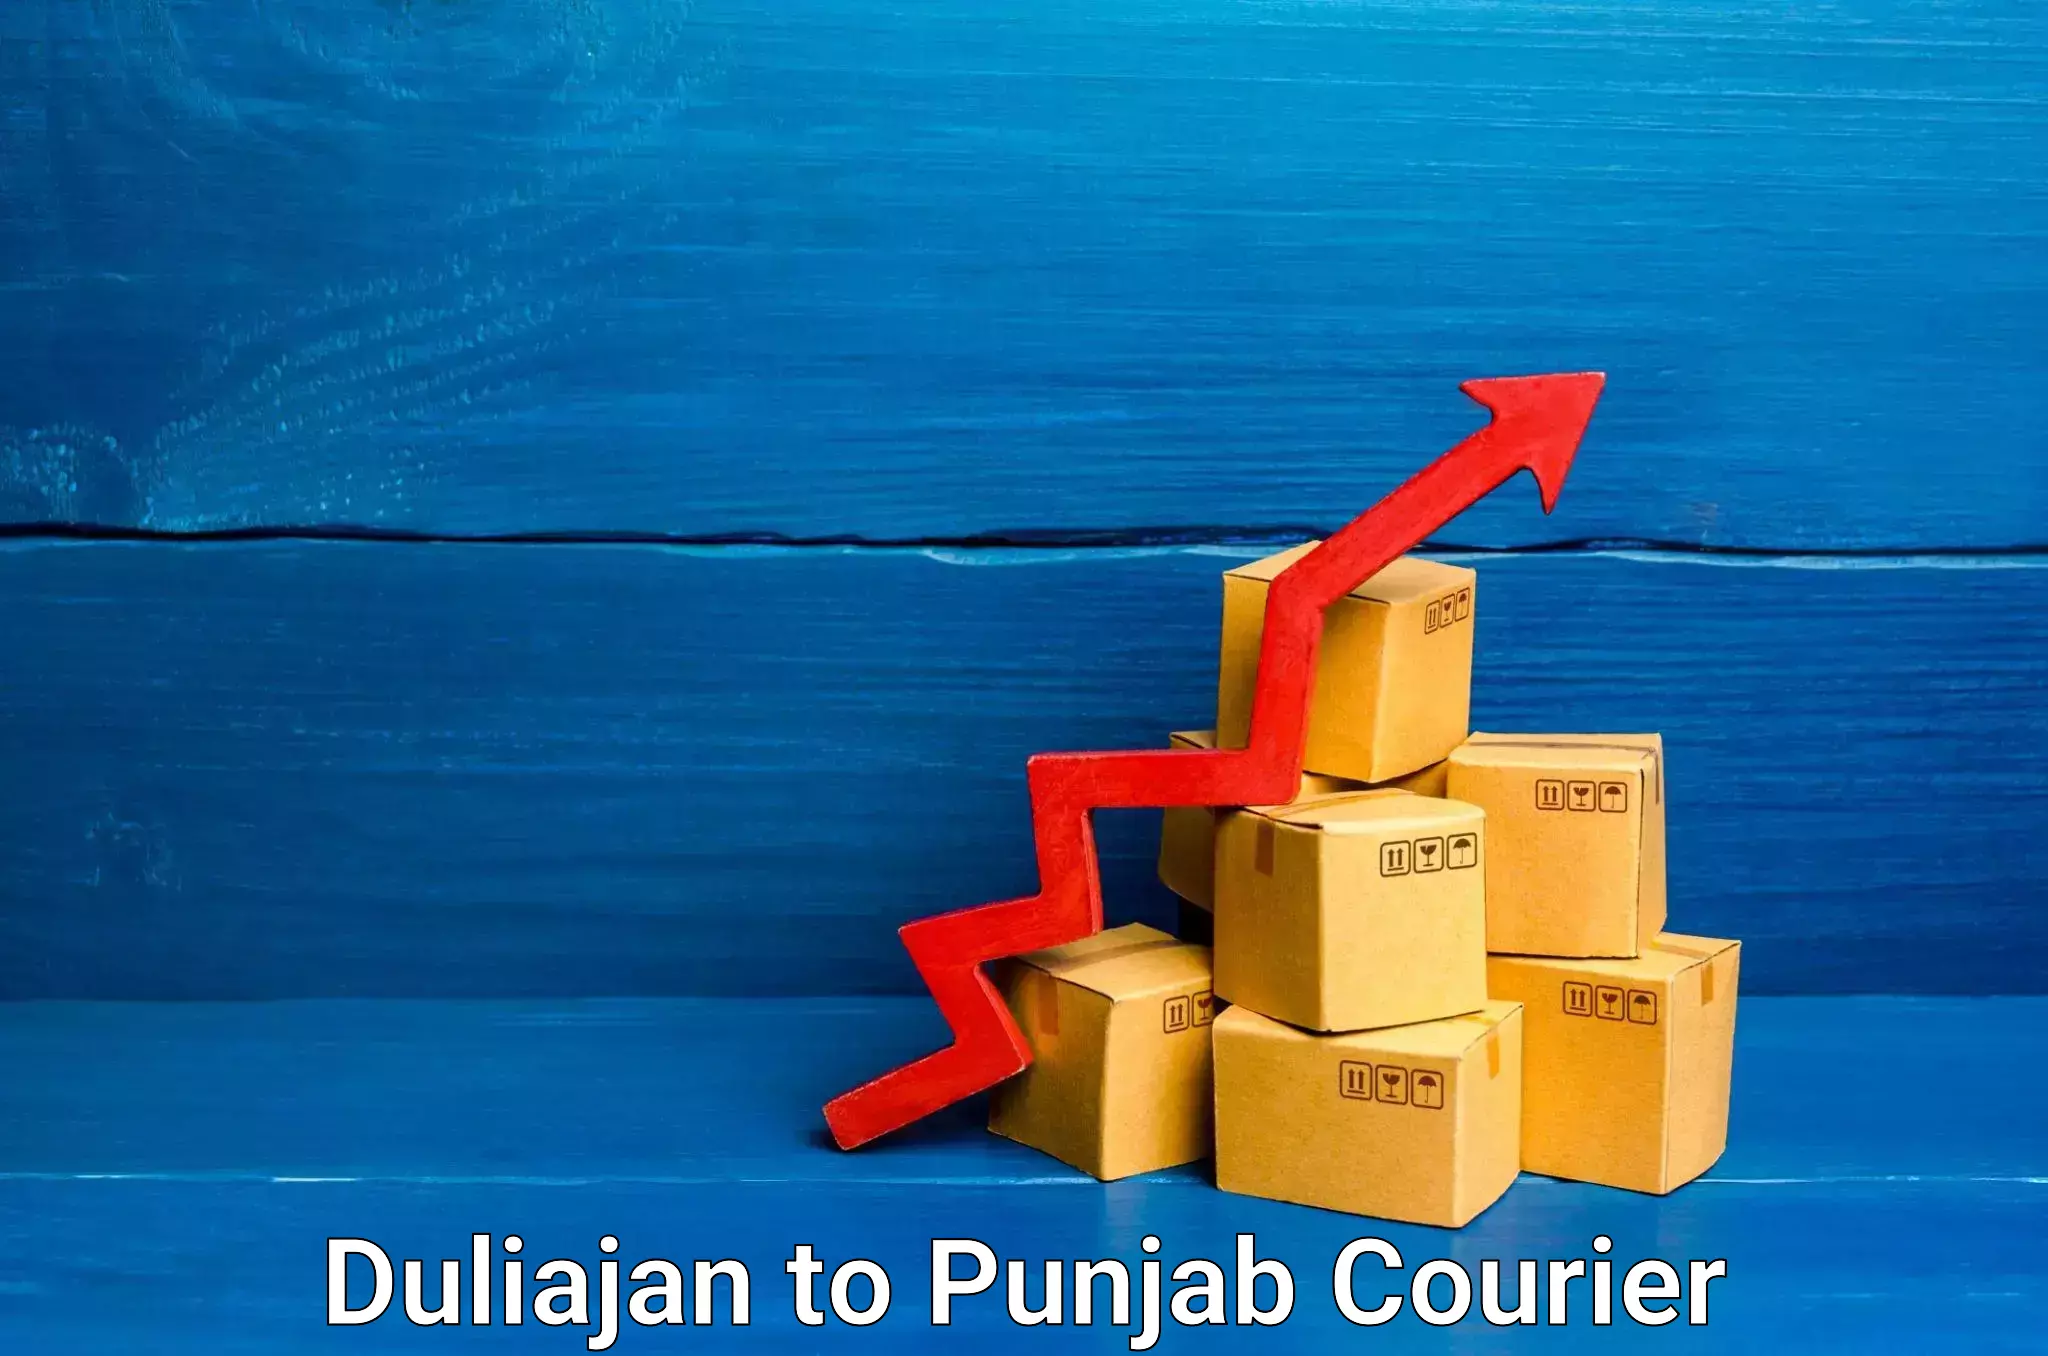 High-speed parcel service Duliajan to Punjab